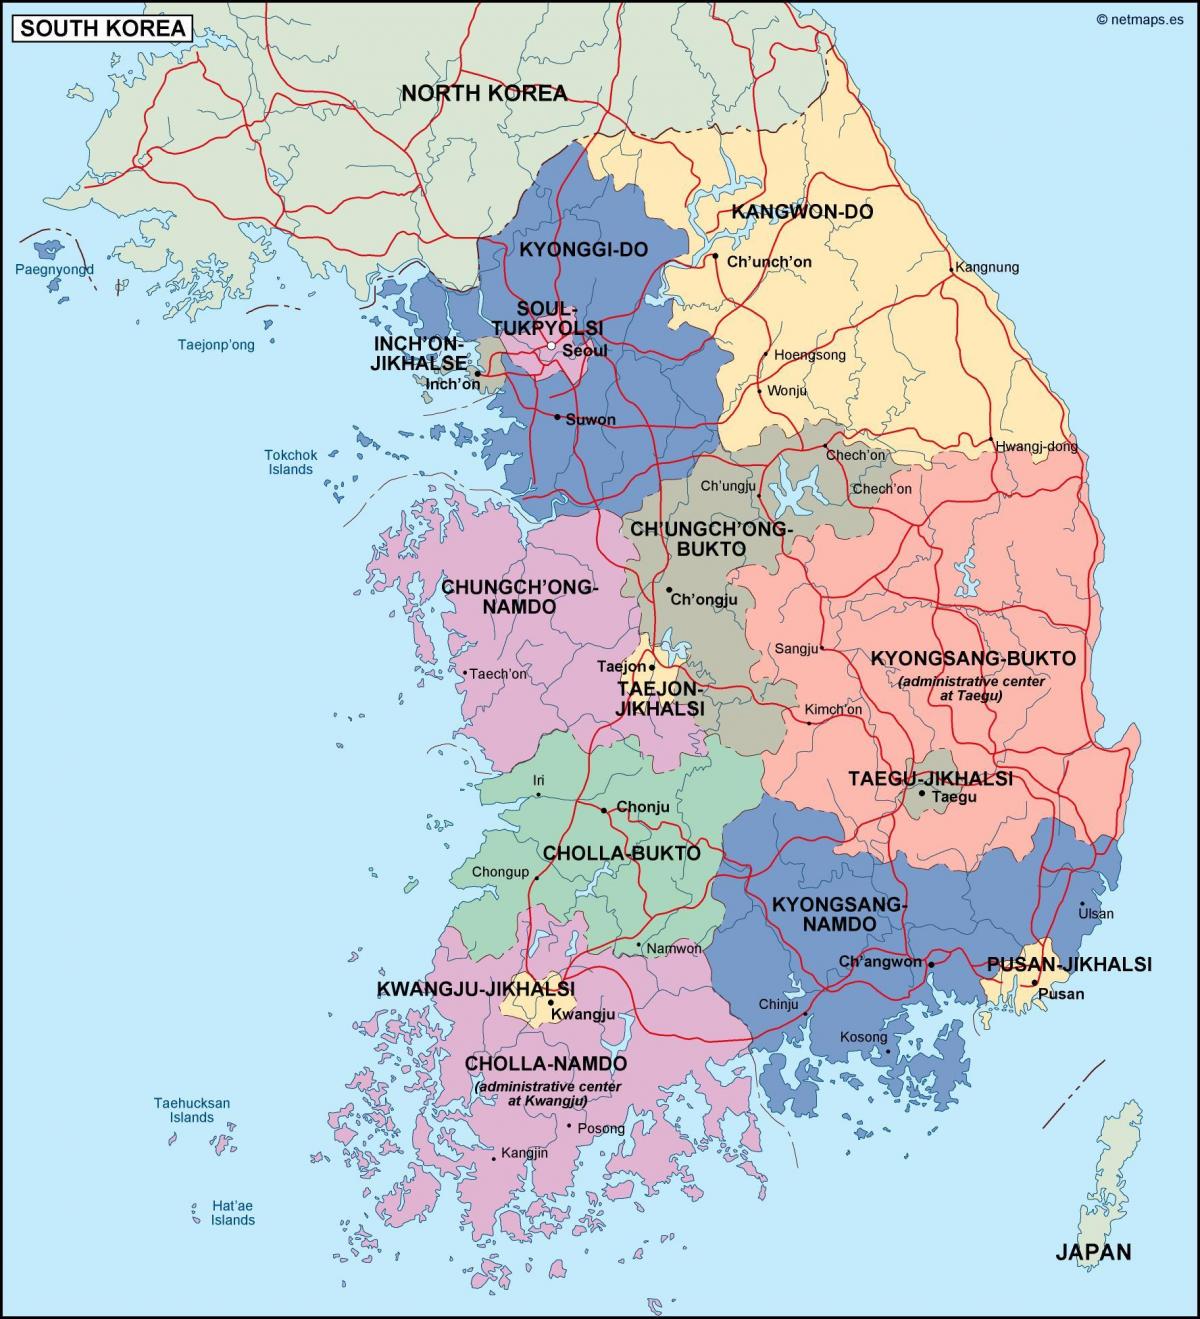 خريطة إدارية لكوريا الجنوبية